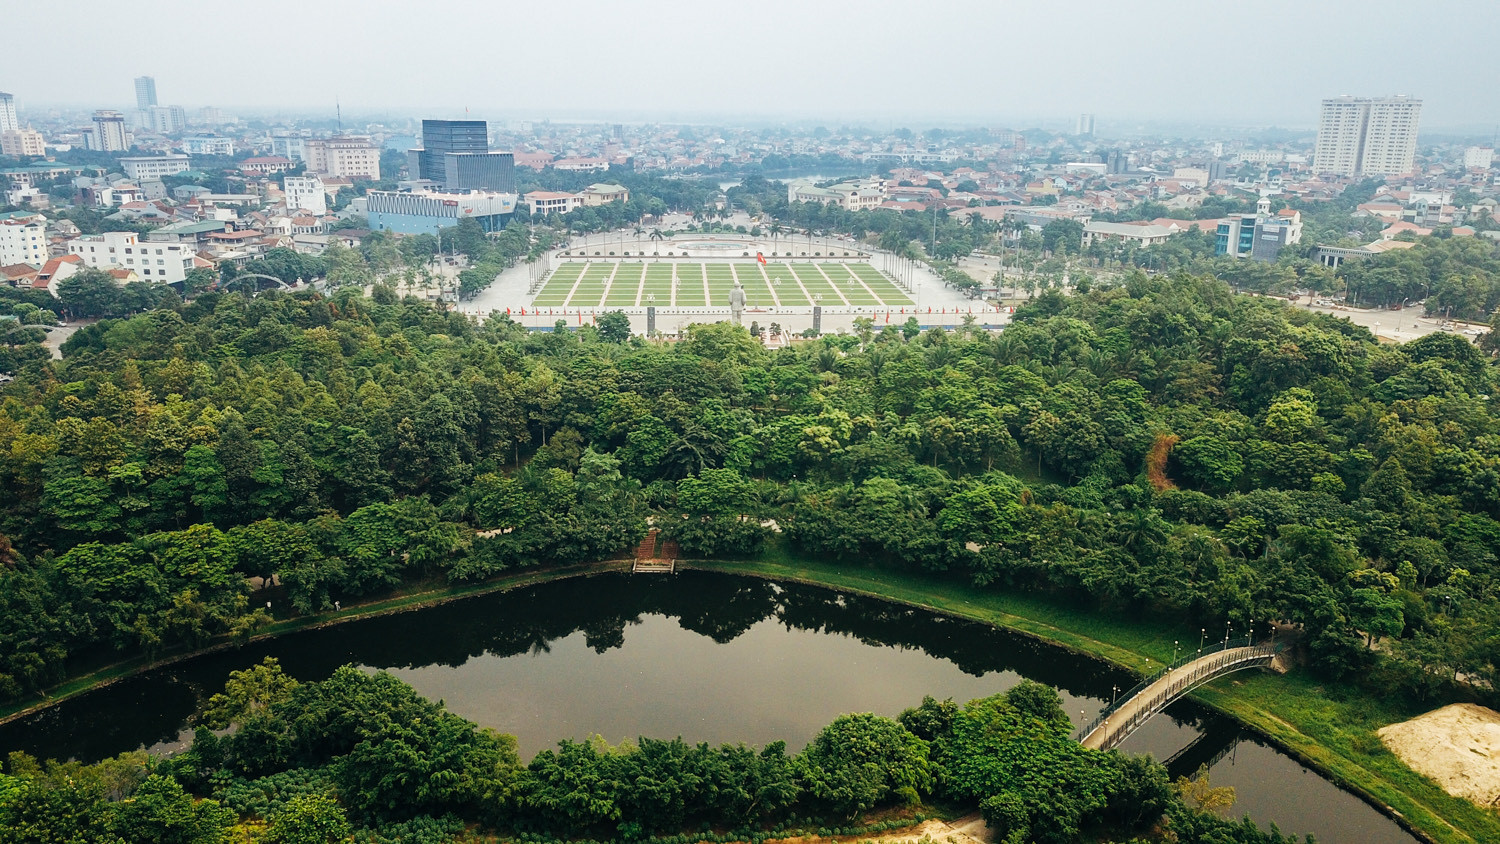 Quảng trường Hồ Chí Minh và  tượng đài Bác Hồ (TP Vinh) ngày  nay từng là nơi ở của công nhân Trường Thi, Bến Thủy xưa kia. Ảnh: Hải Vương